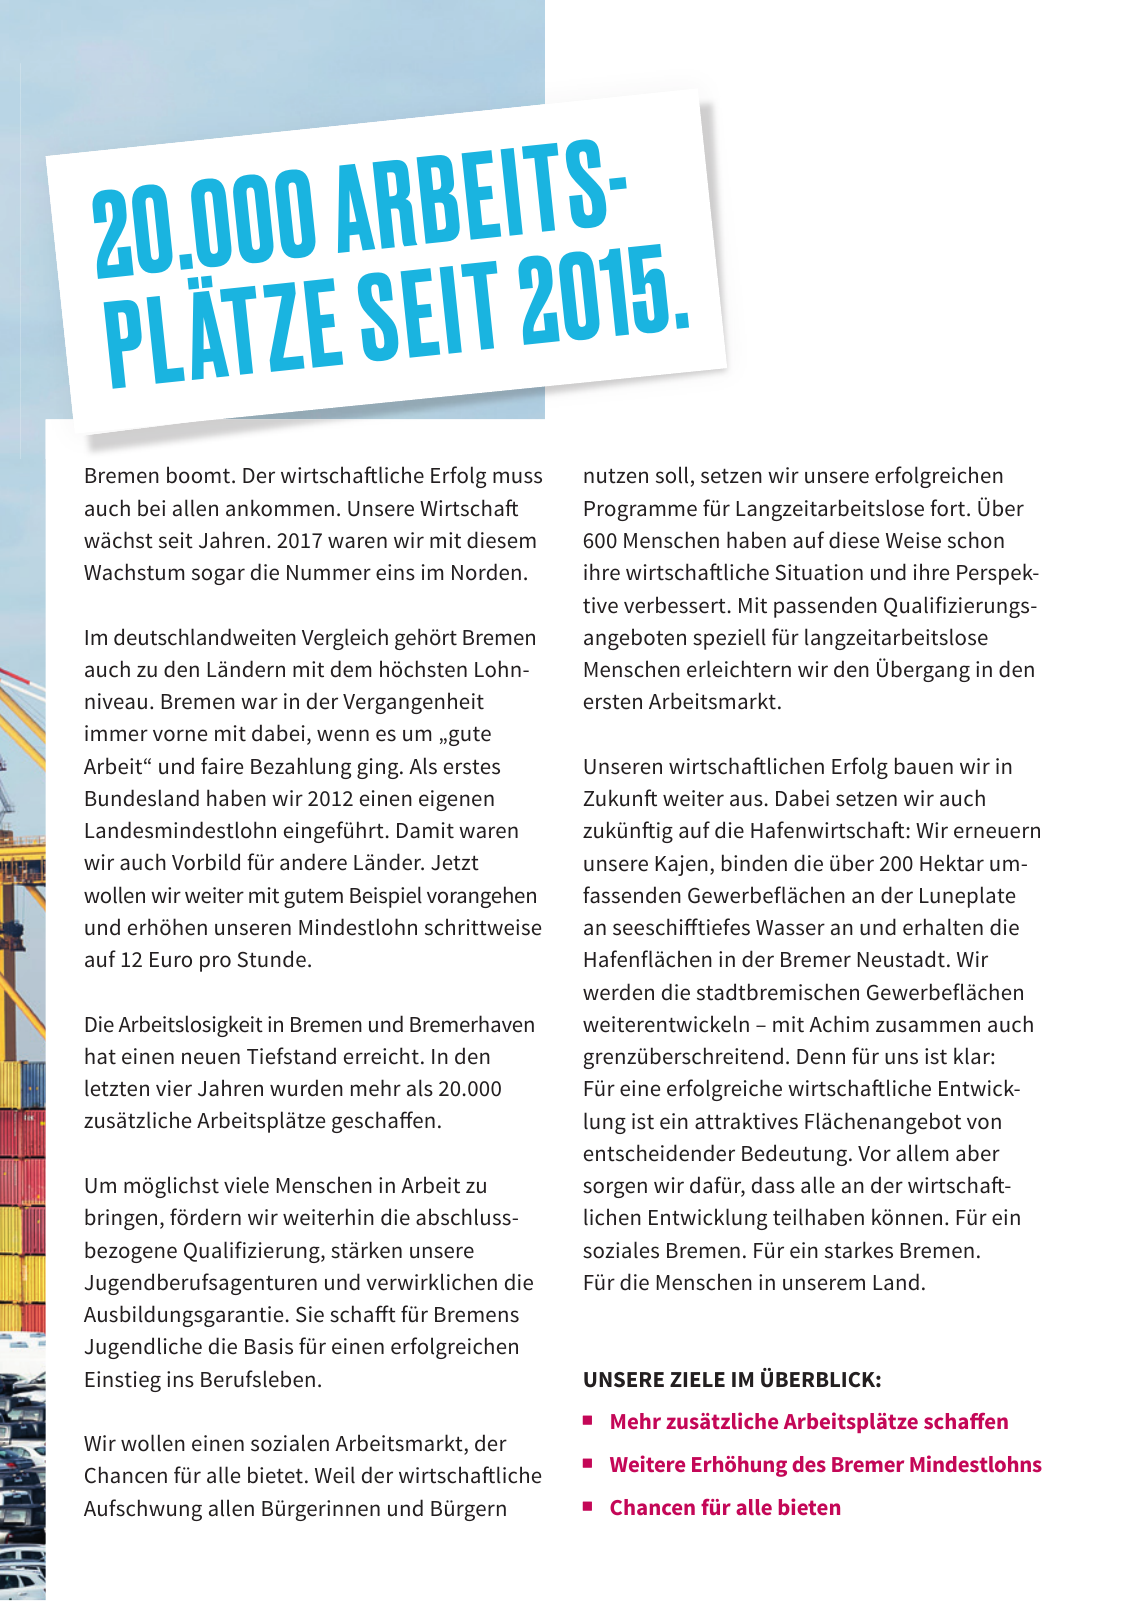 Vorschau SPD Kurzwahlprogramm - April 2019 Seite 9